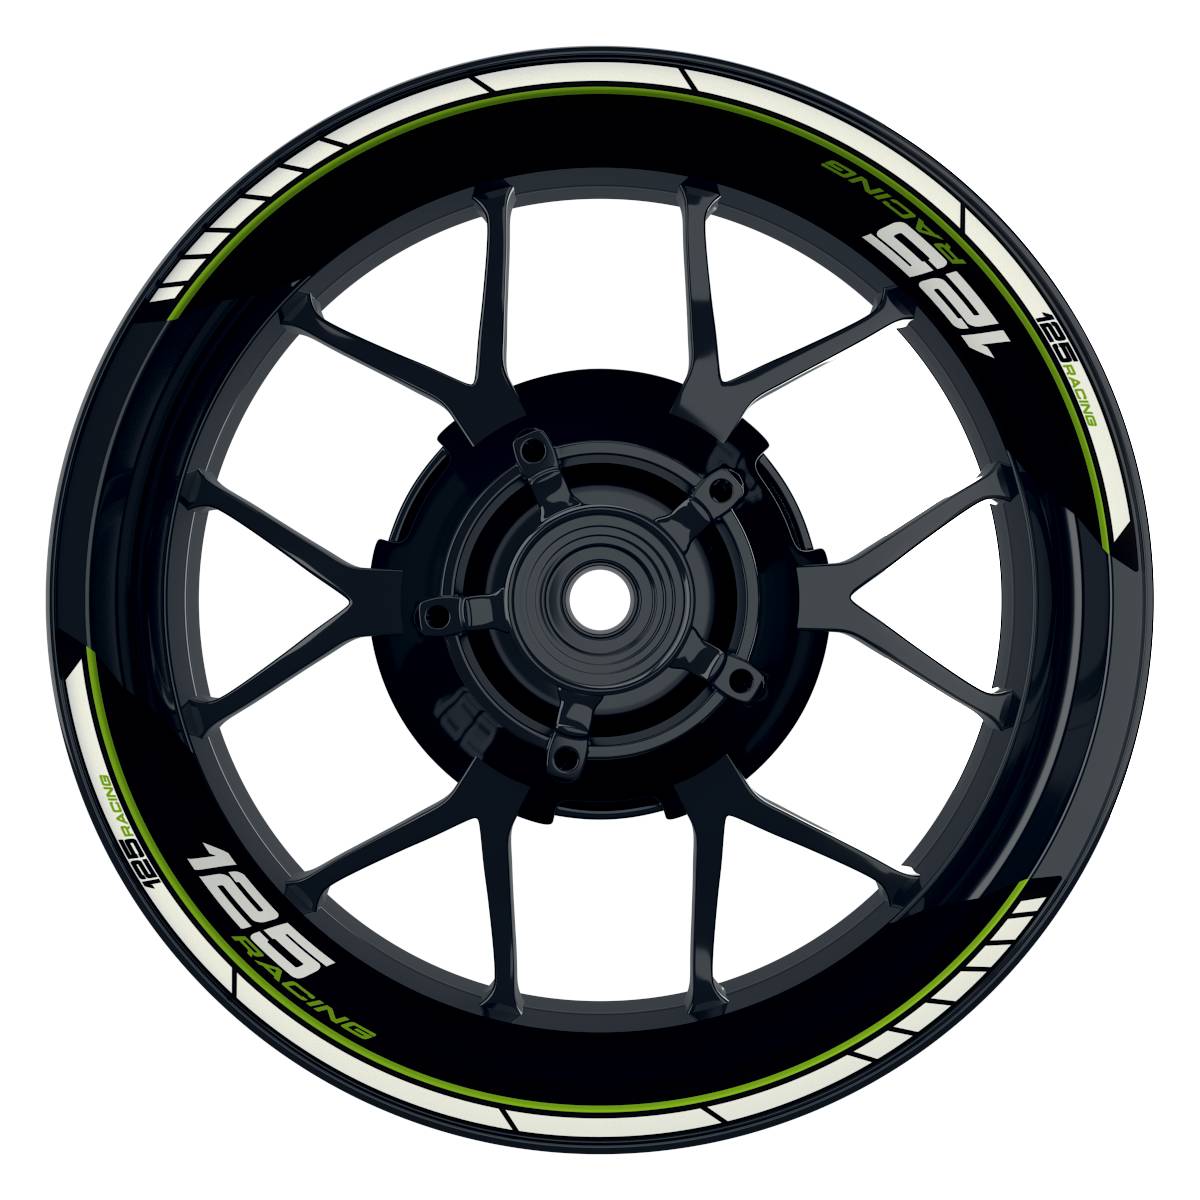 KTM Racing 125 Clean schwarz gruen Frontansicht